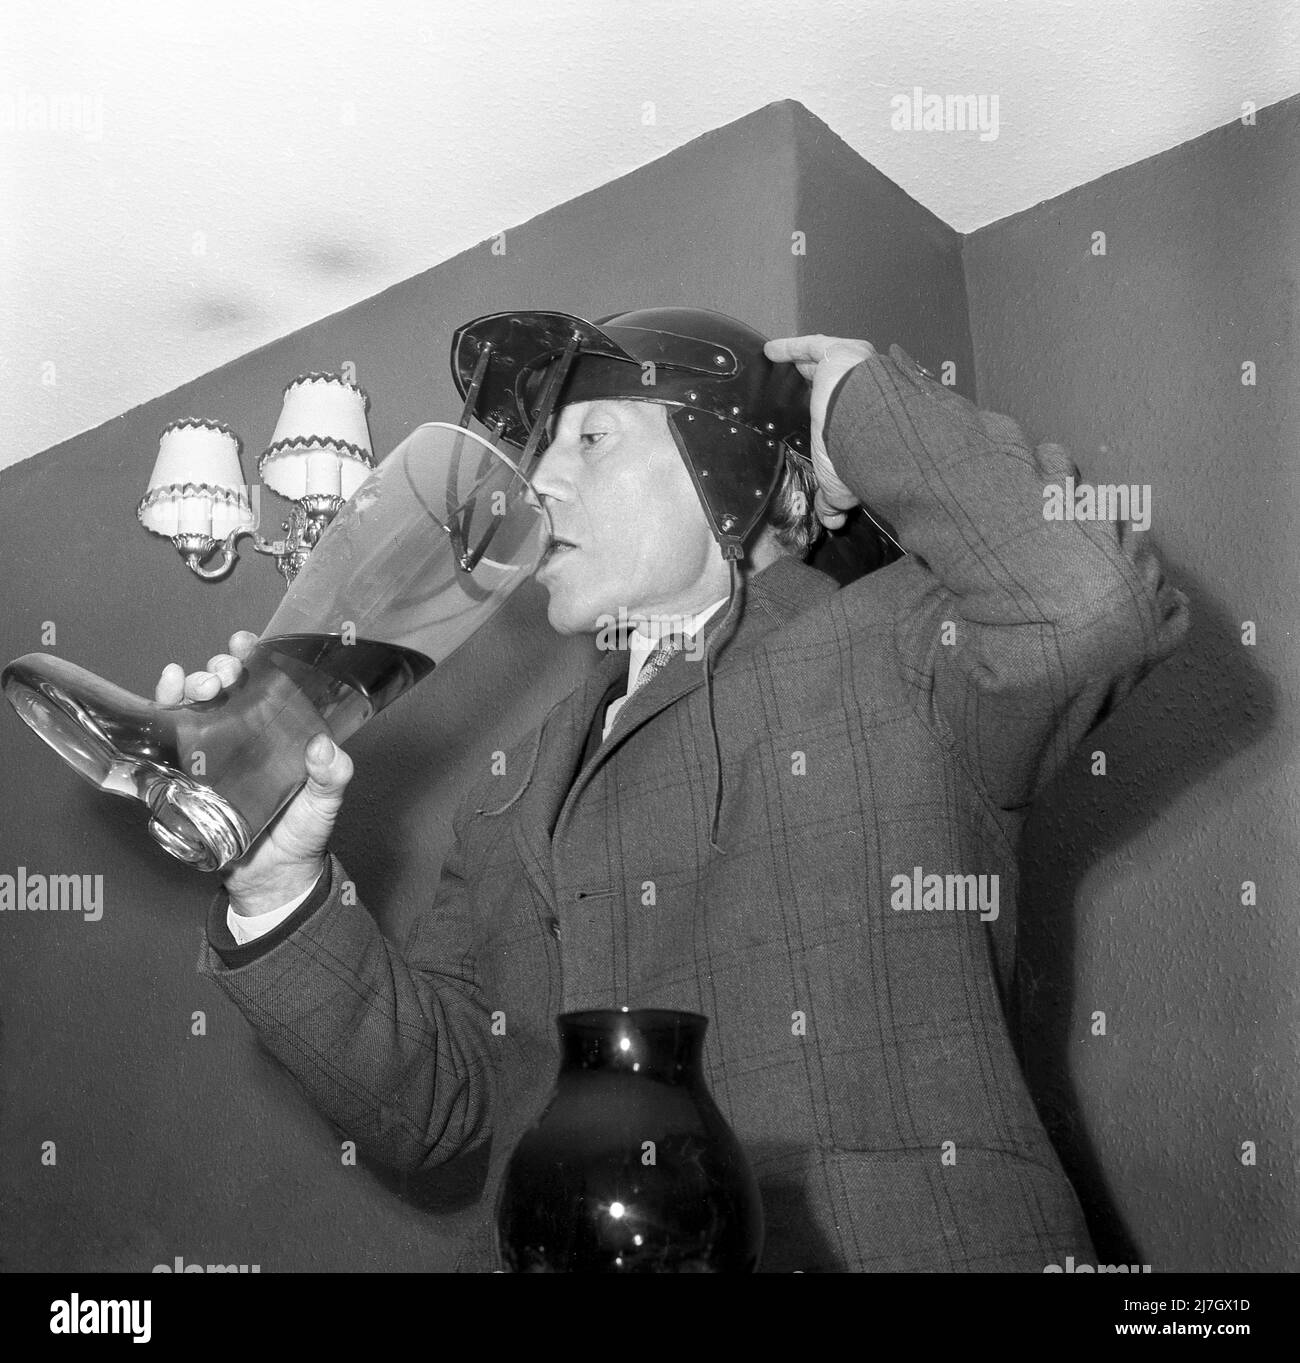 1960s, historisch, ein Mann, der in einem Raum steht, eine Jacke mit Karokmuster und eine ungewöhnliche Mütze oder einen Hut mit Ohrenklappen trägt. Der Hut hat auch eine Front-Visier mit anliegenden Lederriemen. Er trinkt von einem großen Glas Bier Stiefel, vielleicht ein traditioneller Toast oder Ritual bei einem jährlichen Sportessen. In Deutschland ist das Biertrinken aus einem Glasstiefel eine Tradition aus dem 19.. Jahrhundert, wo es als militärisches Ritual für junge Soldaten begann. Stockfoto